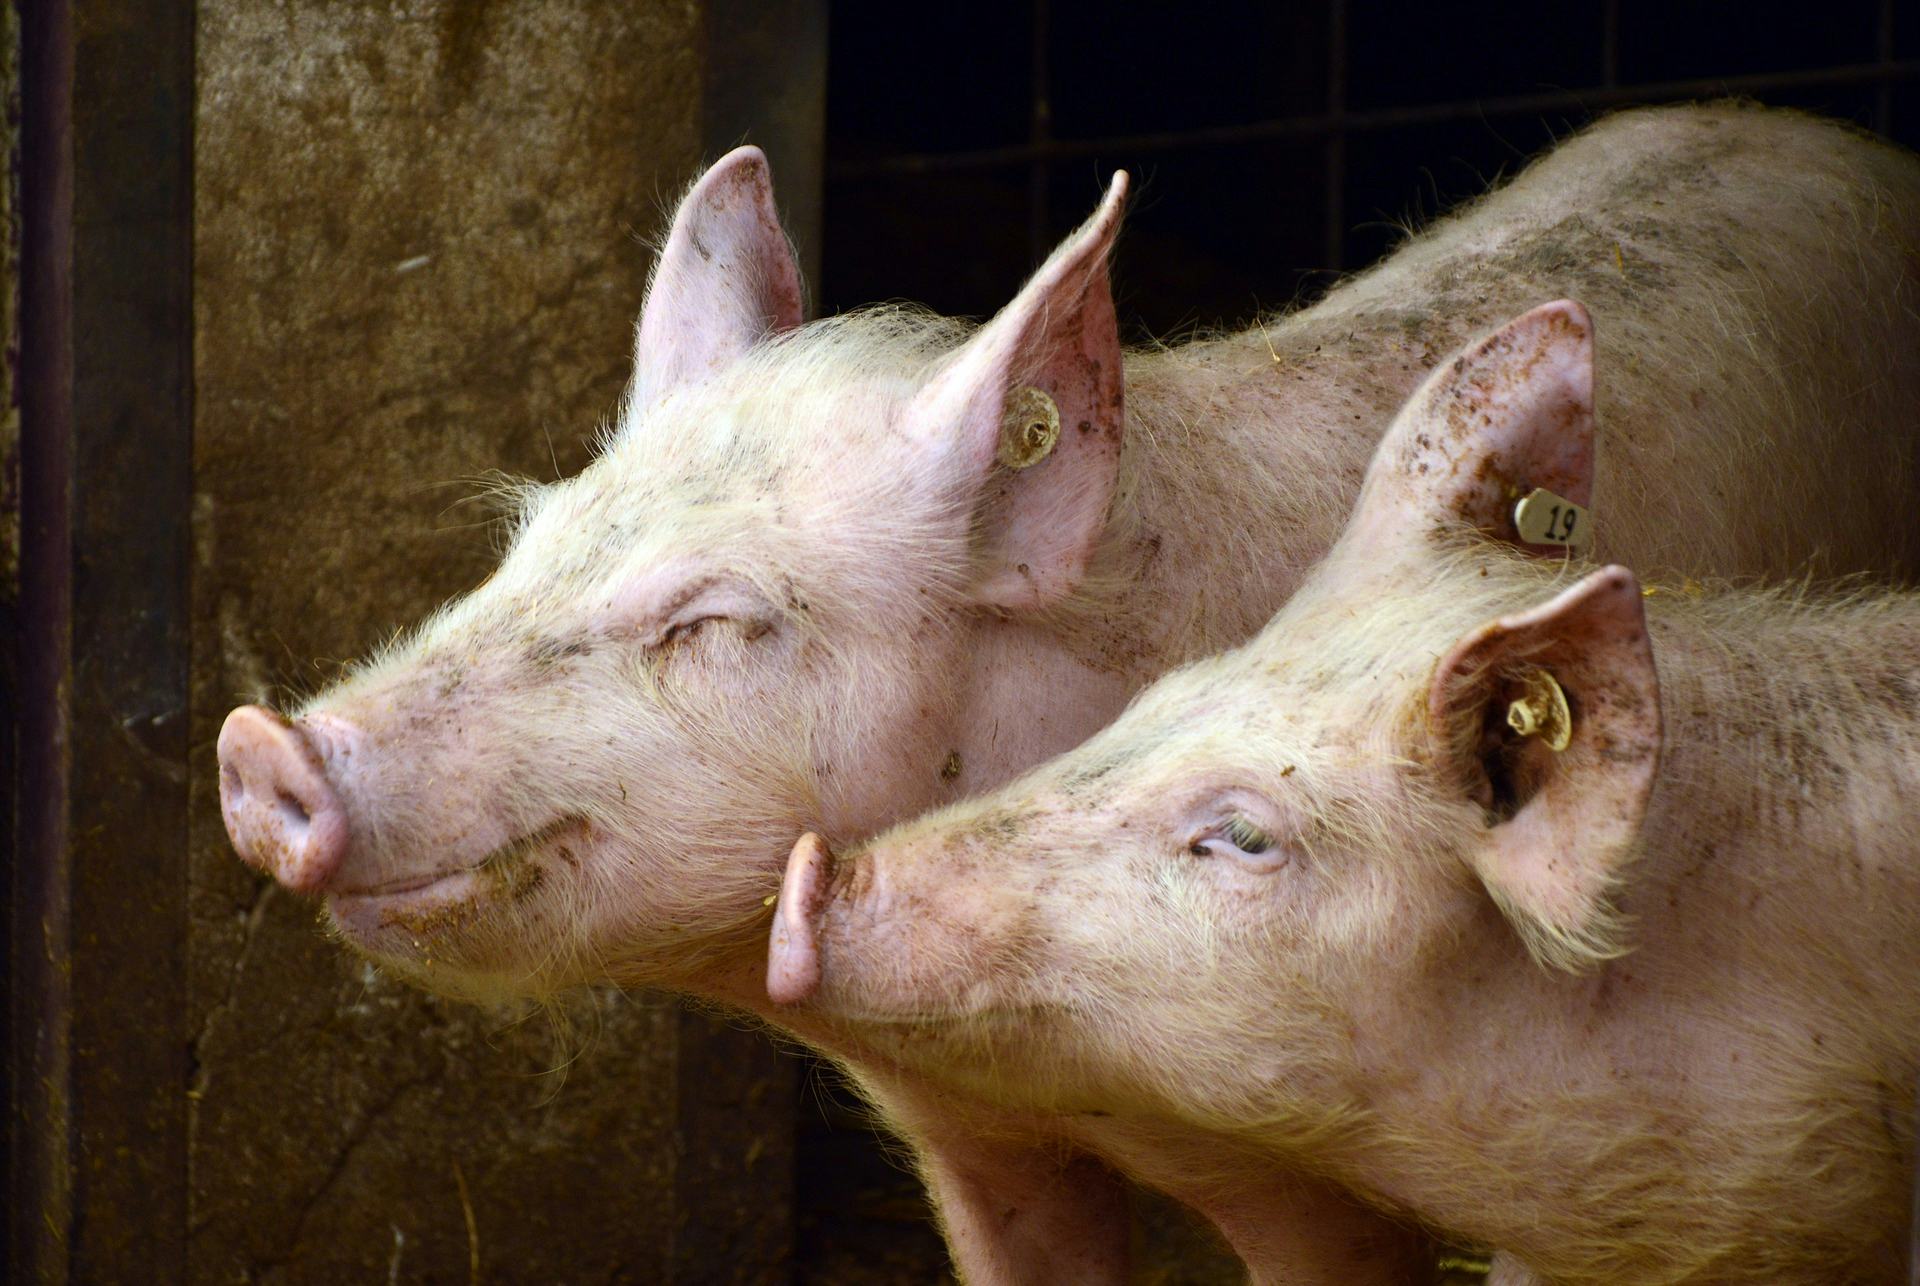 Slordige varkenshouder krijgt schade instorten schuur definitief niet vergoed